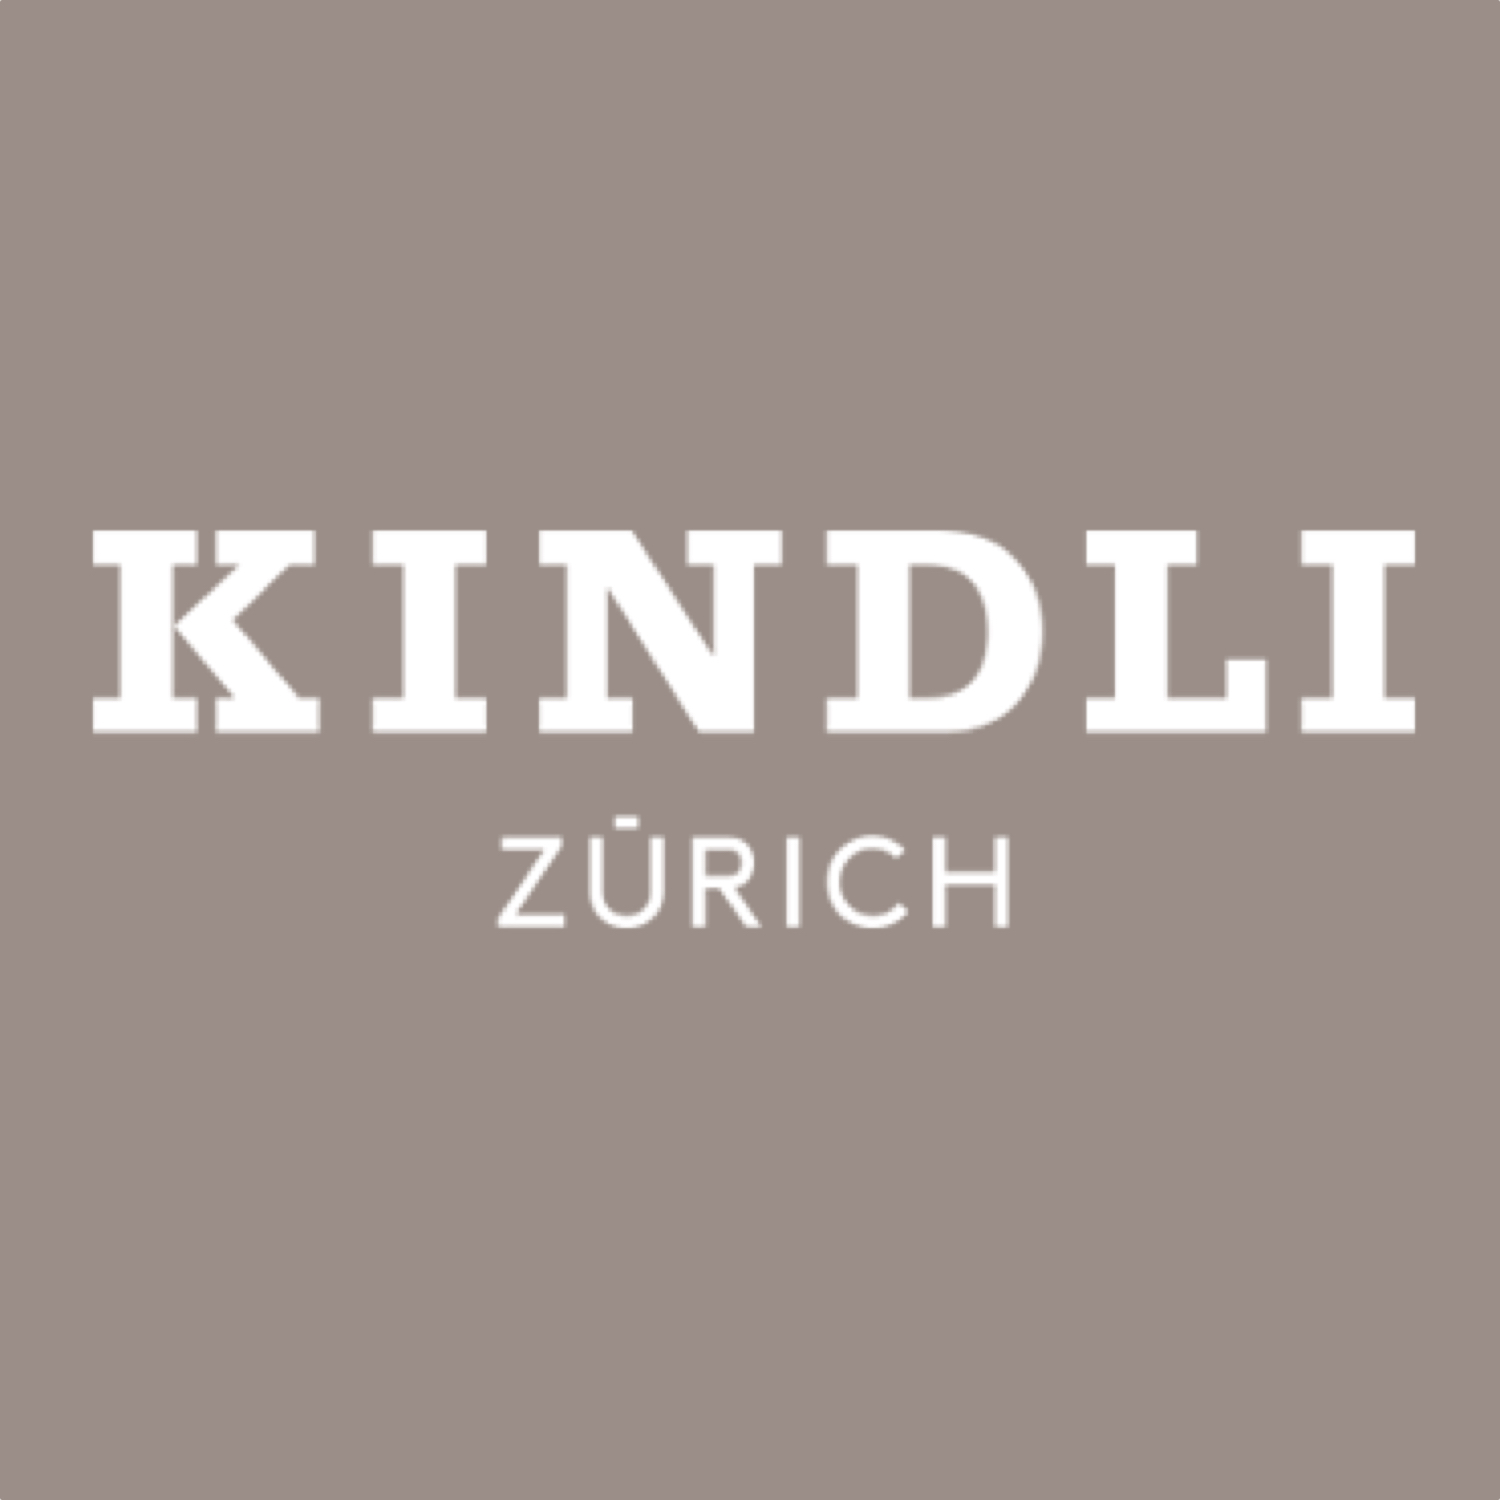 Hotel Kindli - Zurich, Switzerland